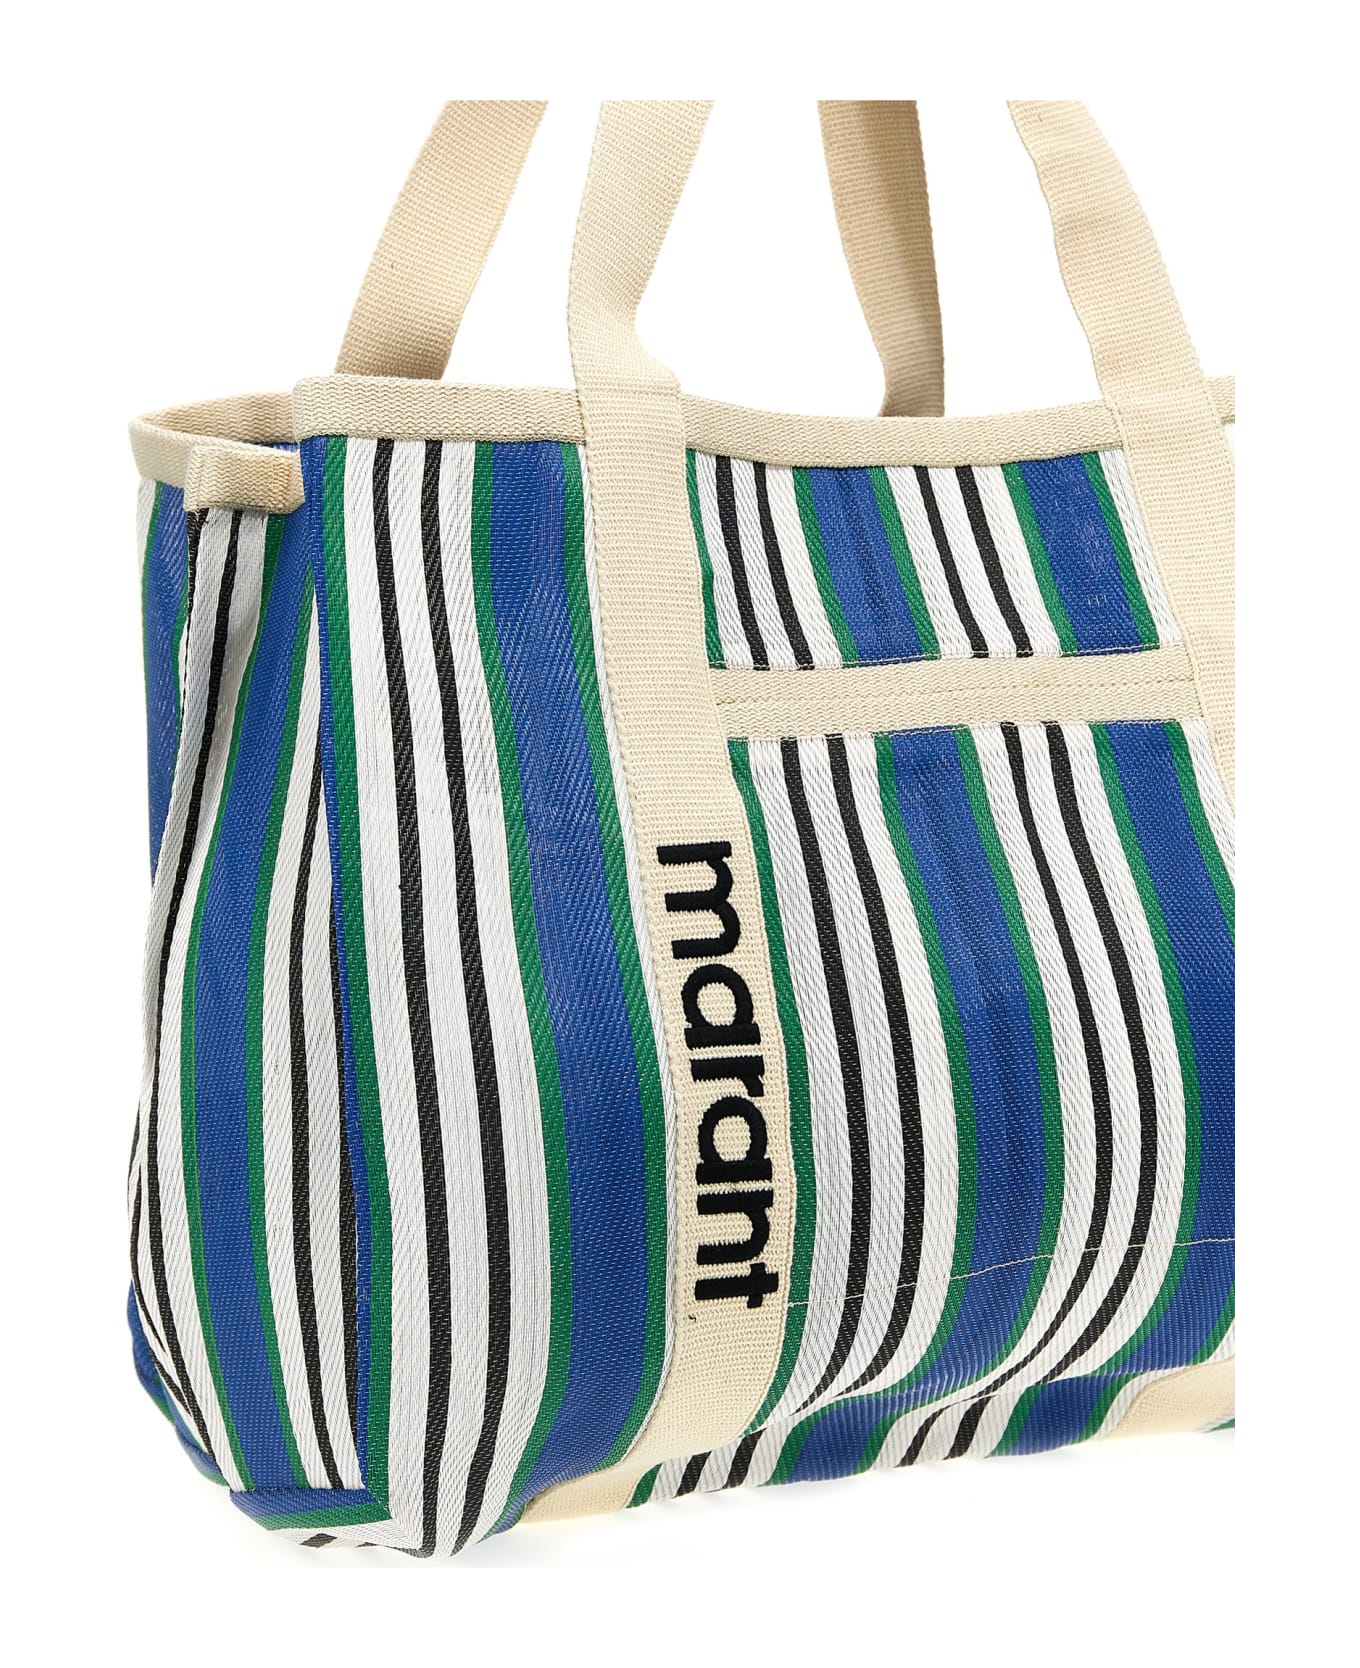 Isabel Marant 'warden' Shopping Bag - Multicolor